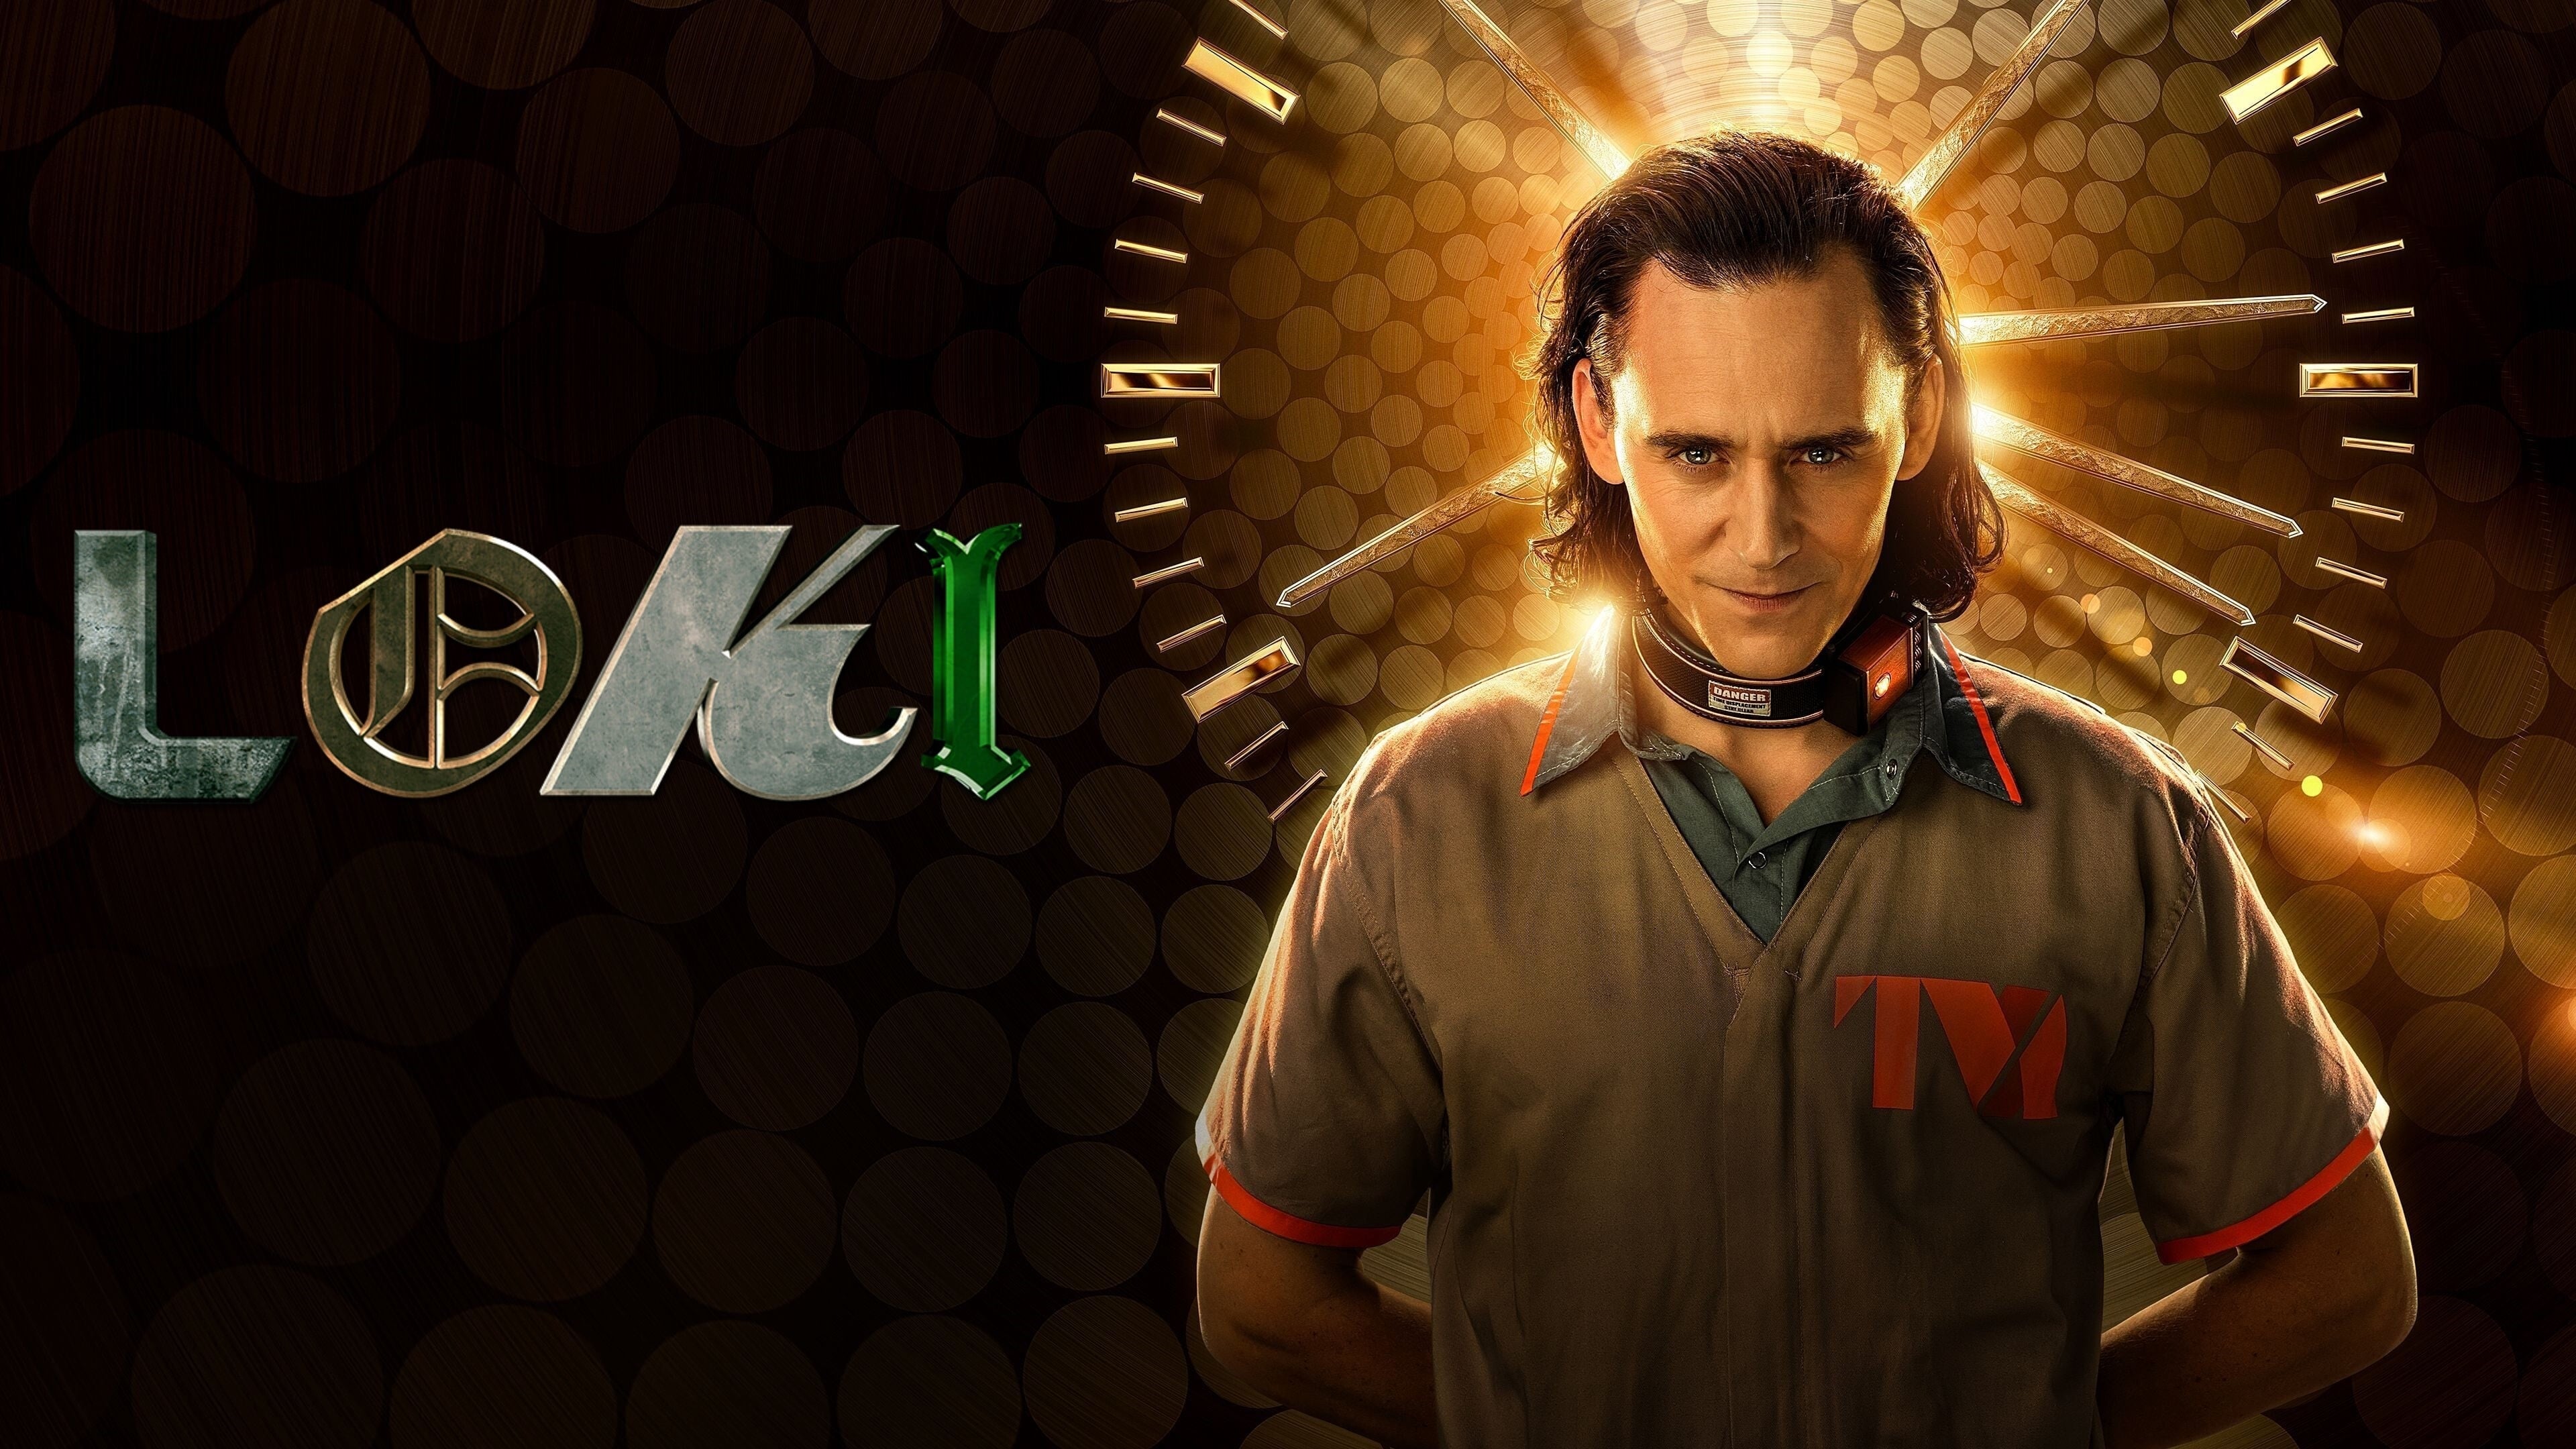 Loki (Tom Hiddleston) - Loki